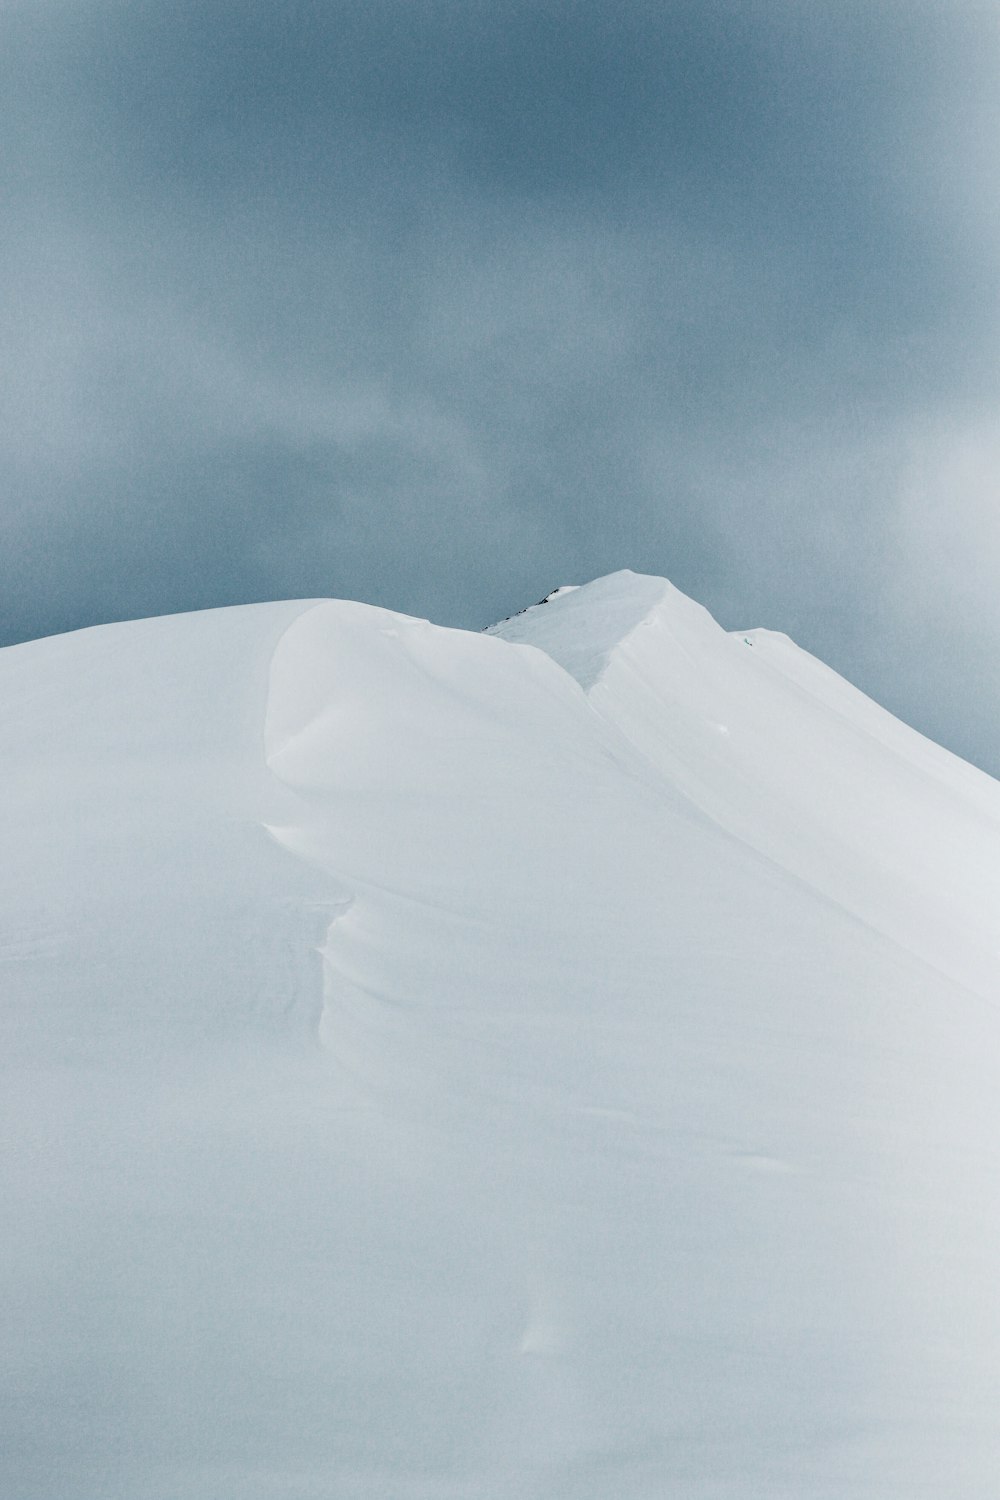 photo of snow mountain